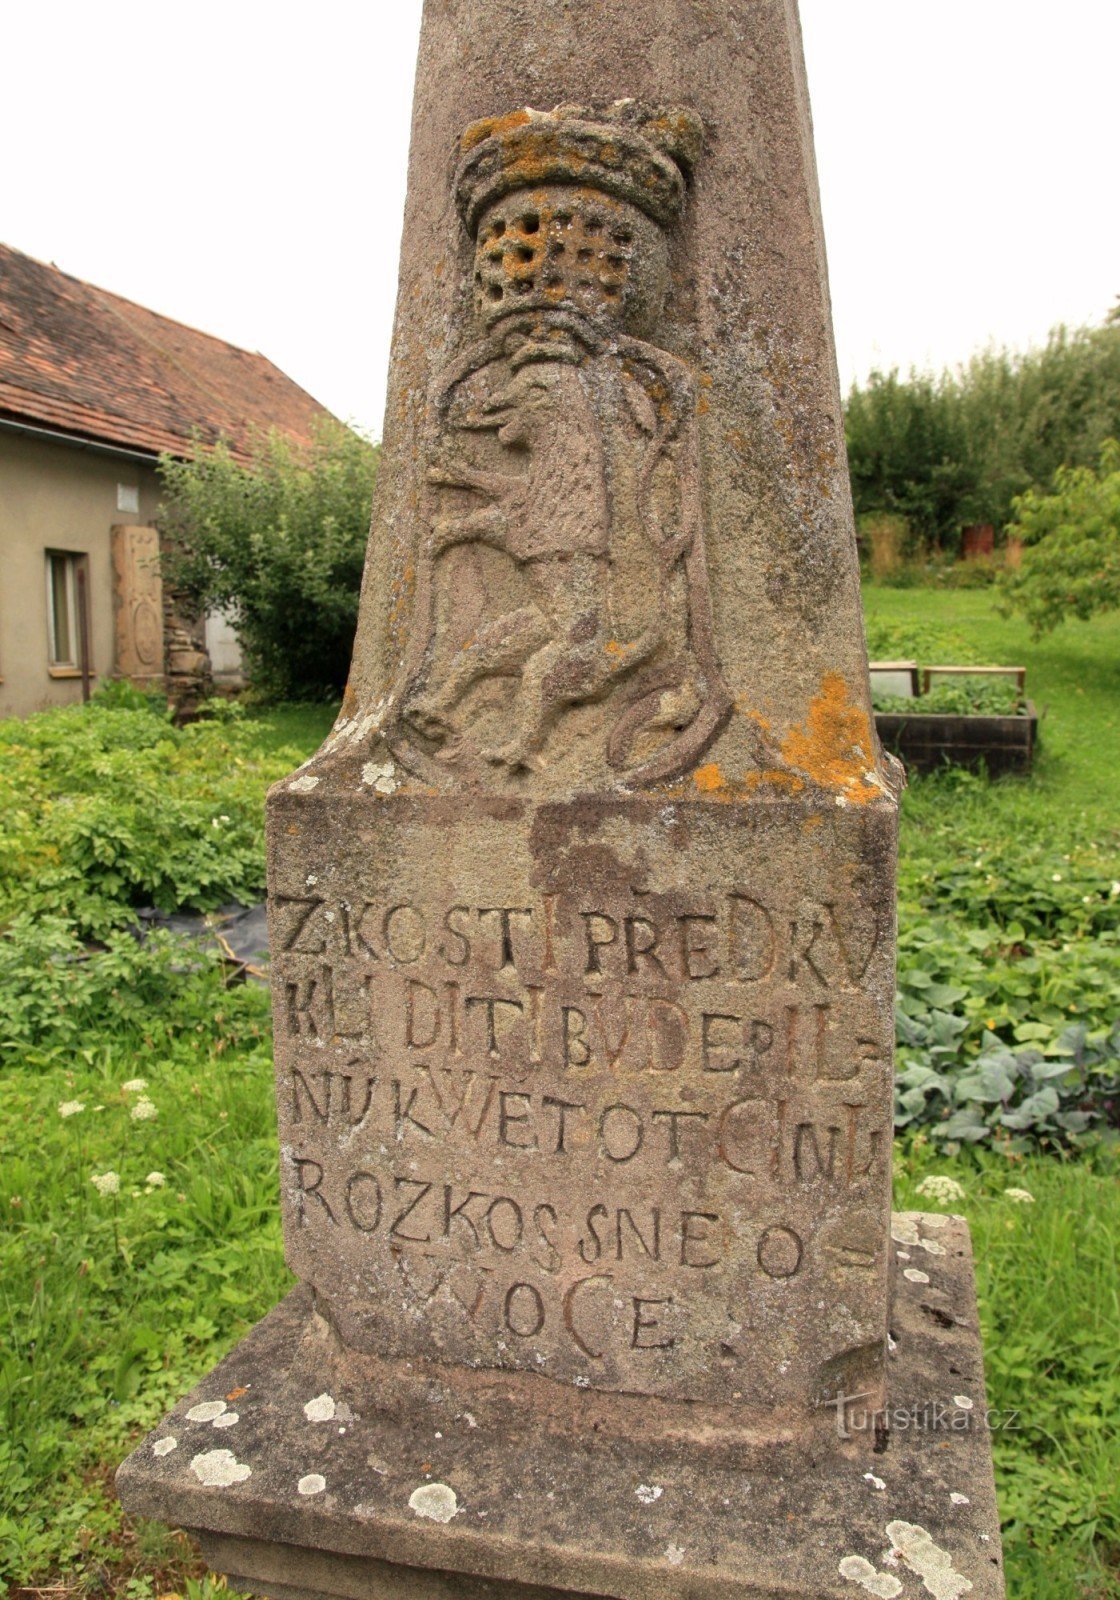 Particolare dell'iscrizione sull'obelisco